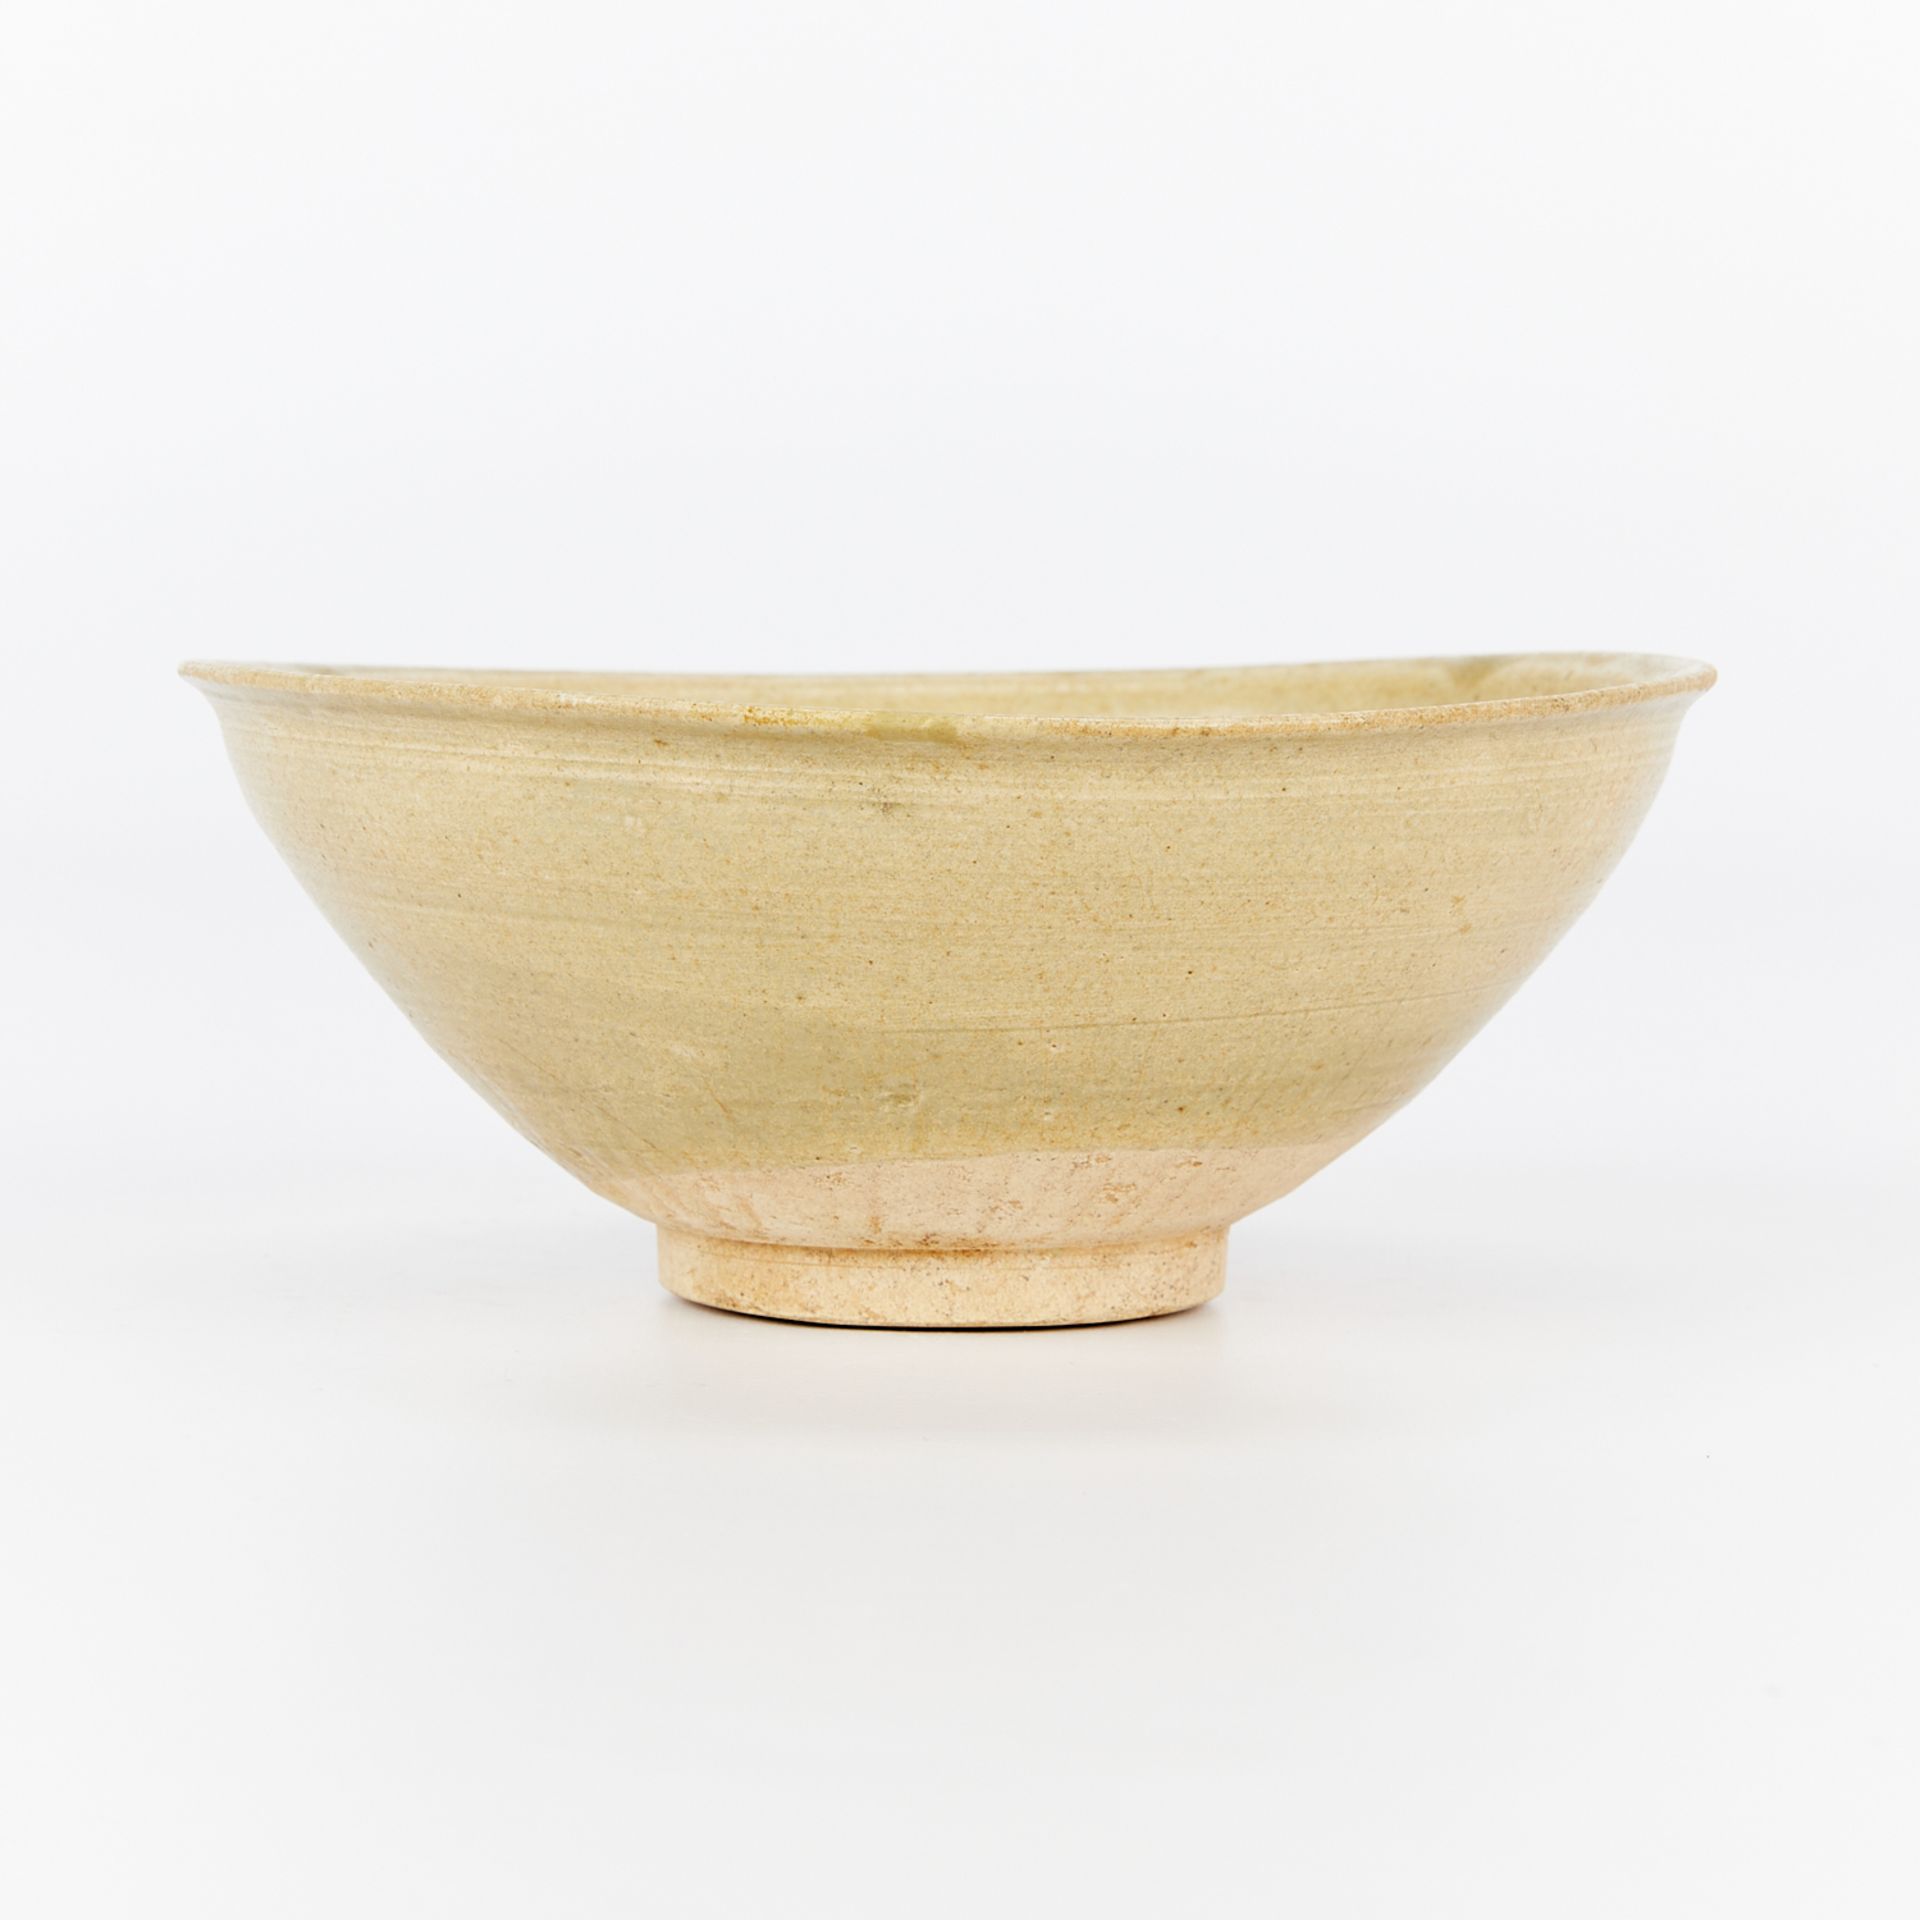 Chinese Song Celadon Glazed Ceramic Bowl - Image 4 of 8